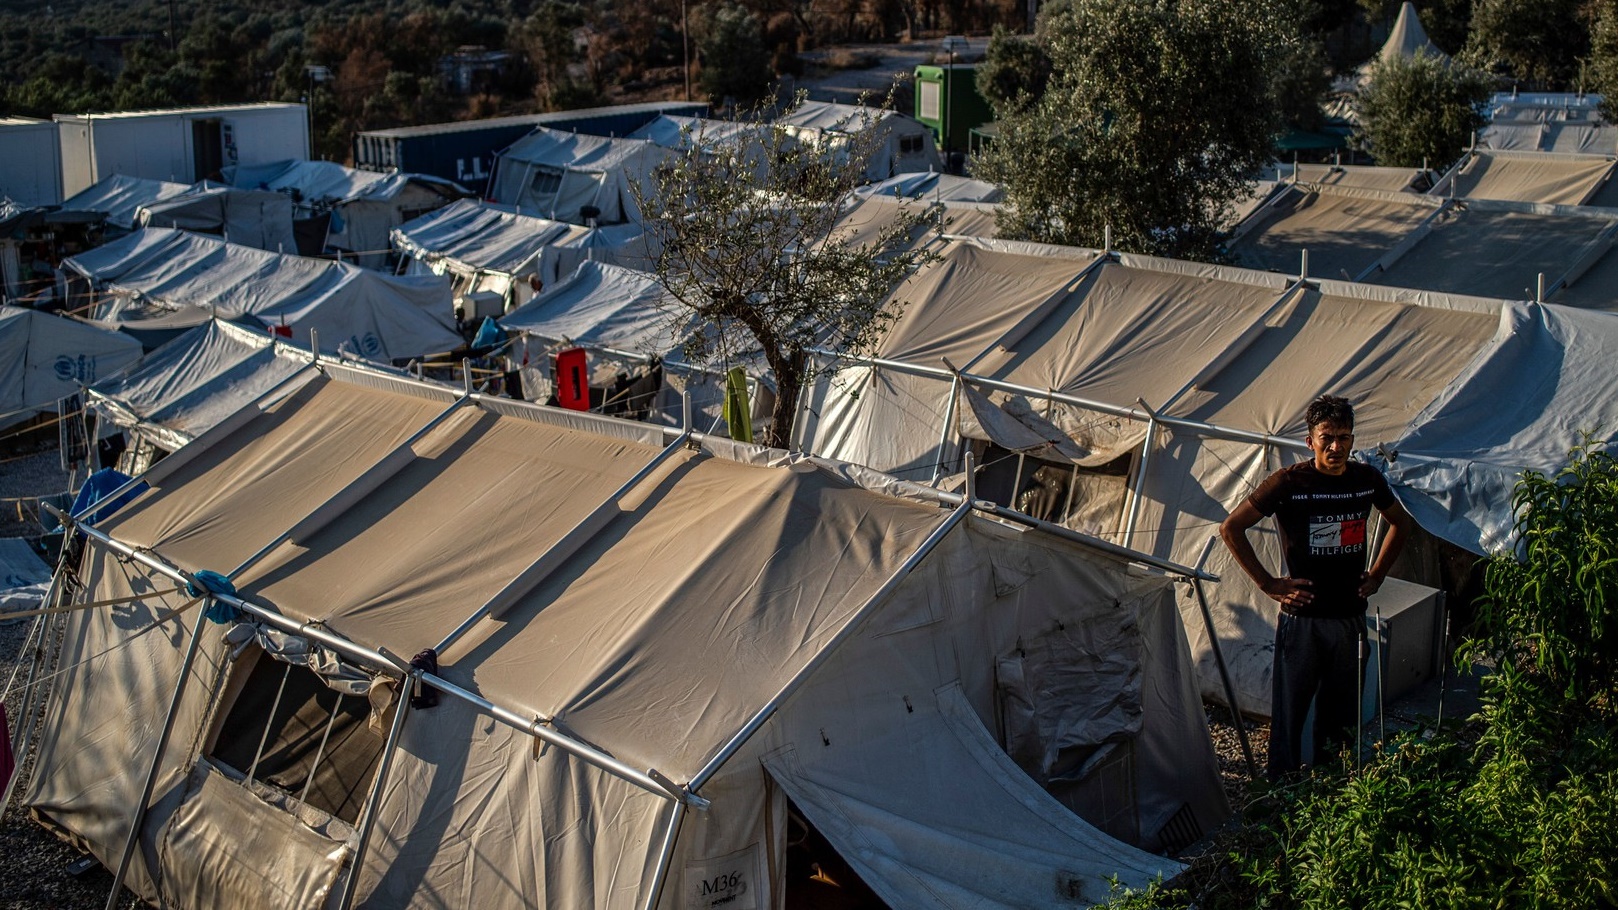 اليونان على مبلغ 155 مليون يورو من دول الاتحاد الأوروبي لتمويل مخيمي ليسبوس وكيوس